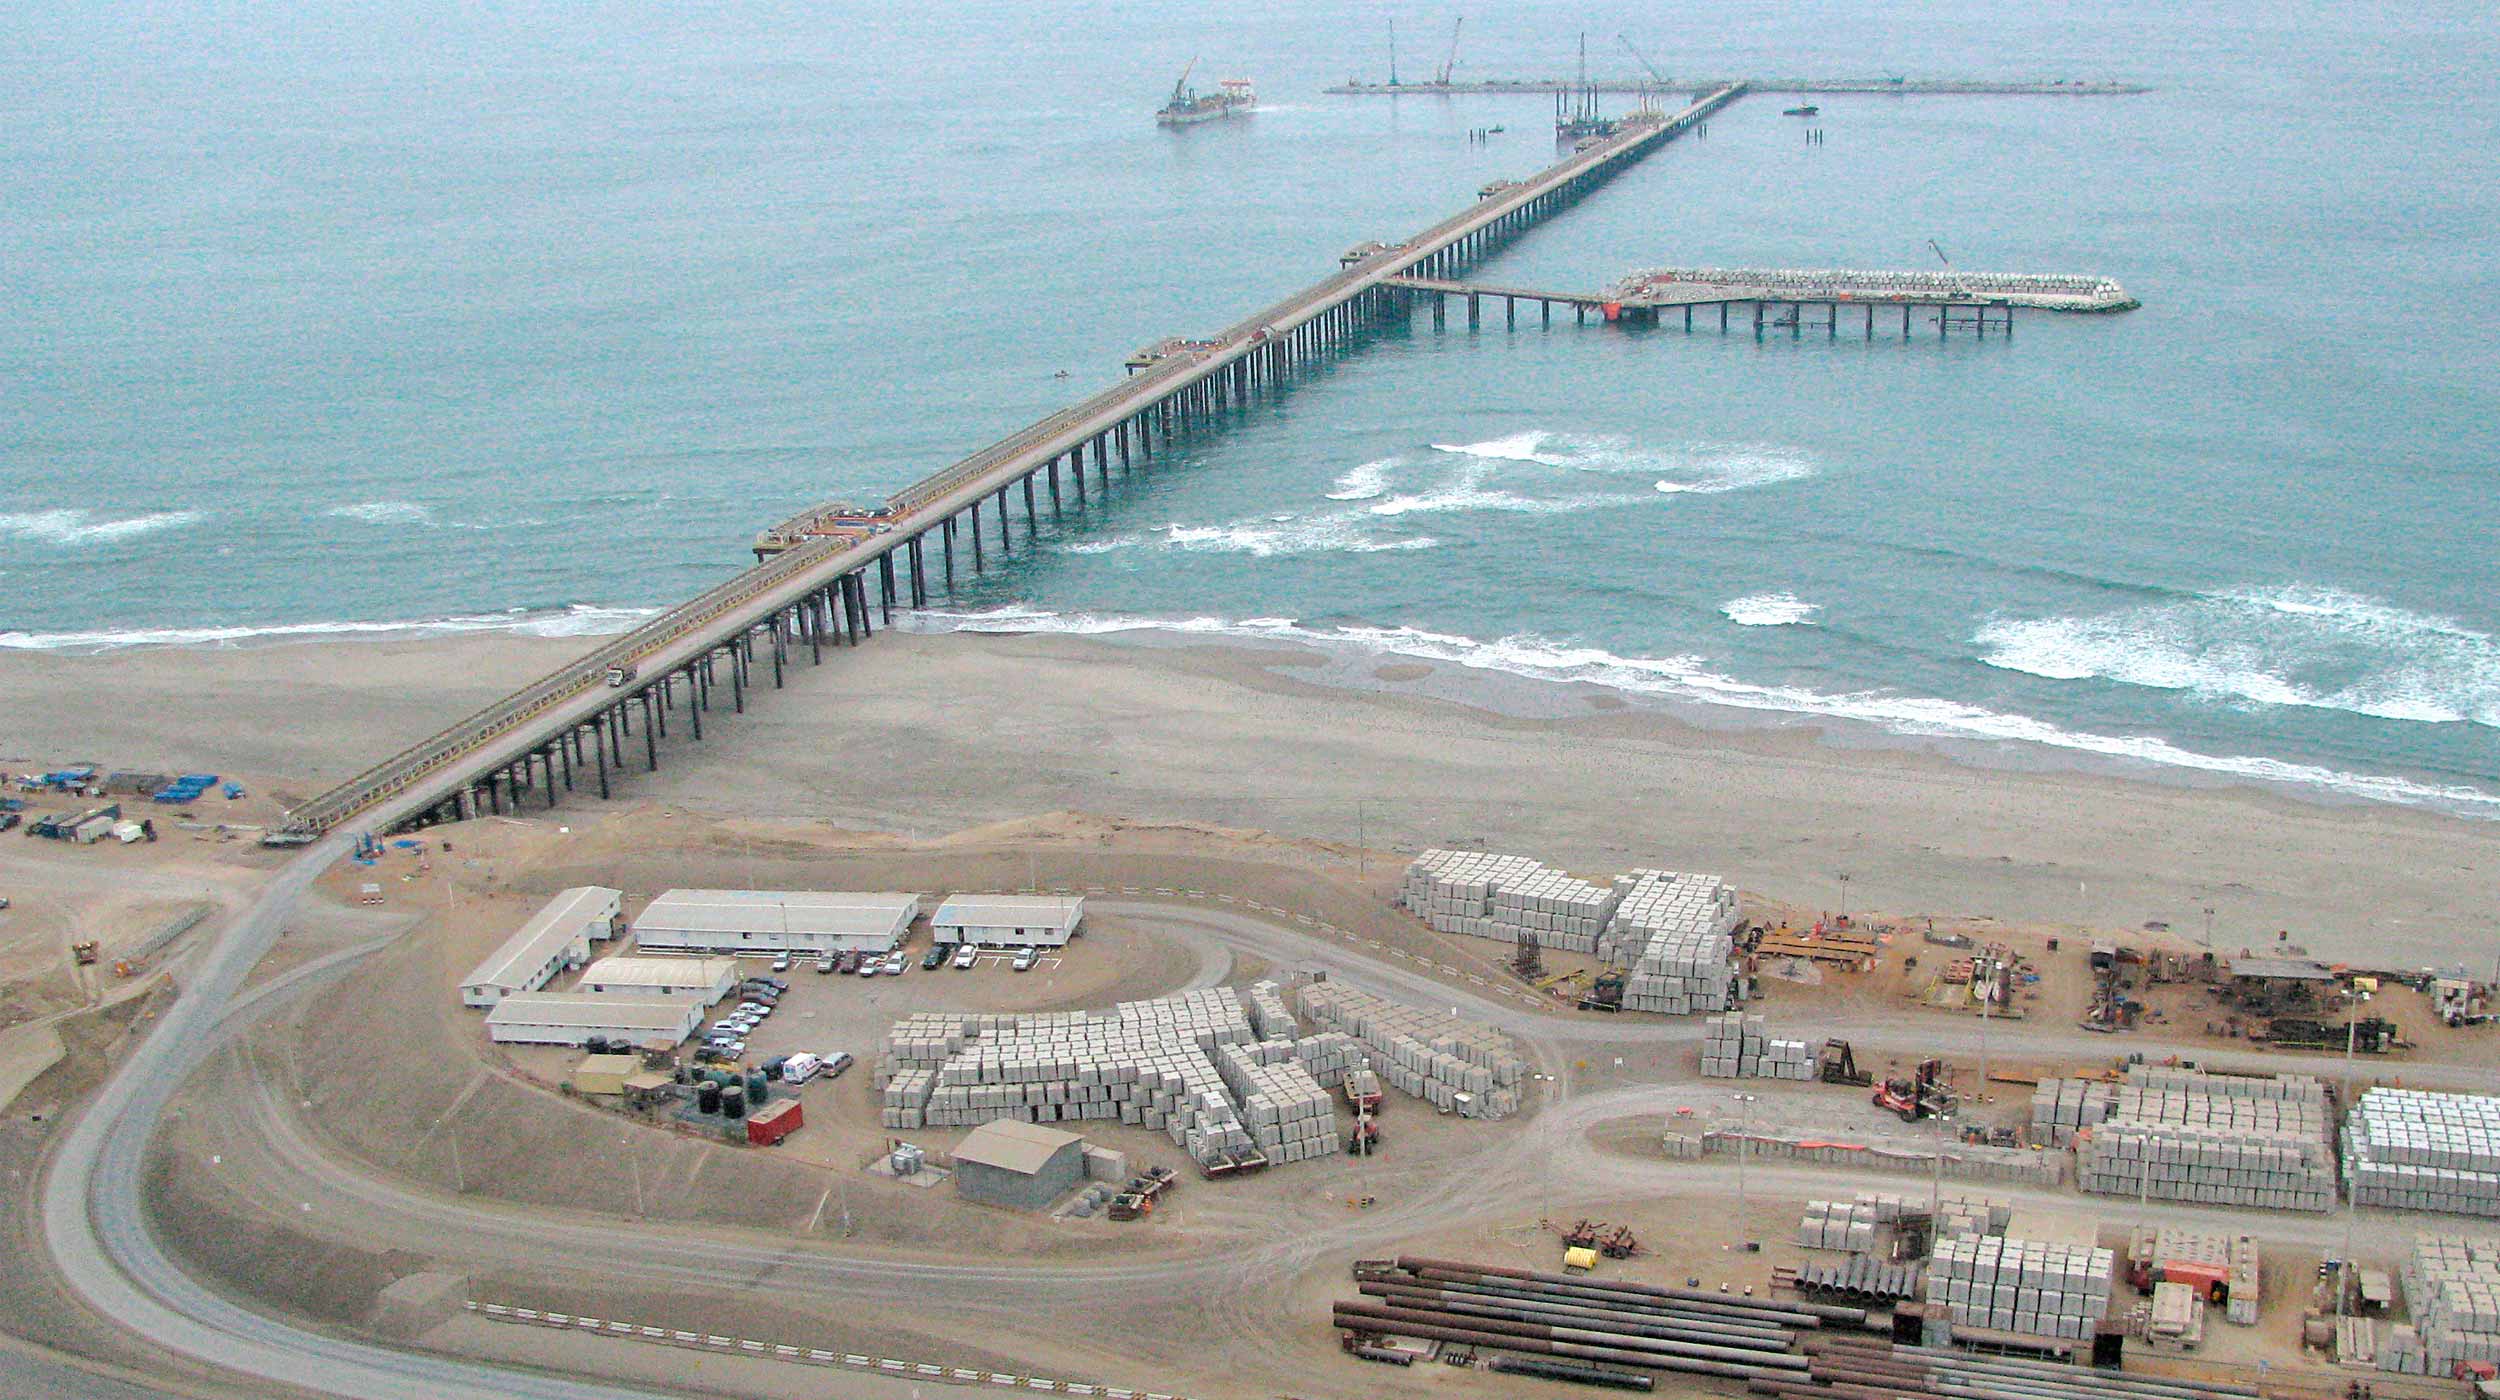 Realizacja Kompleksu Portowego Stacji Eksportu Gazu Ziemnego w Cañete umożliwiła Peru przesunięcie się na pozycję lidera w przemyśle gazowniczym Ameryki Łacińskiej.